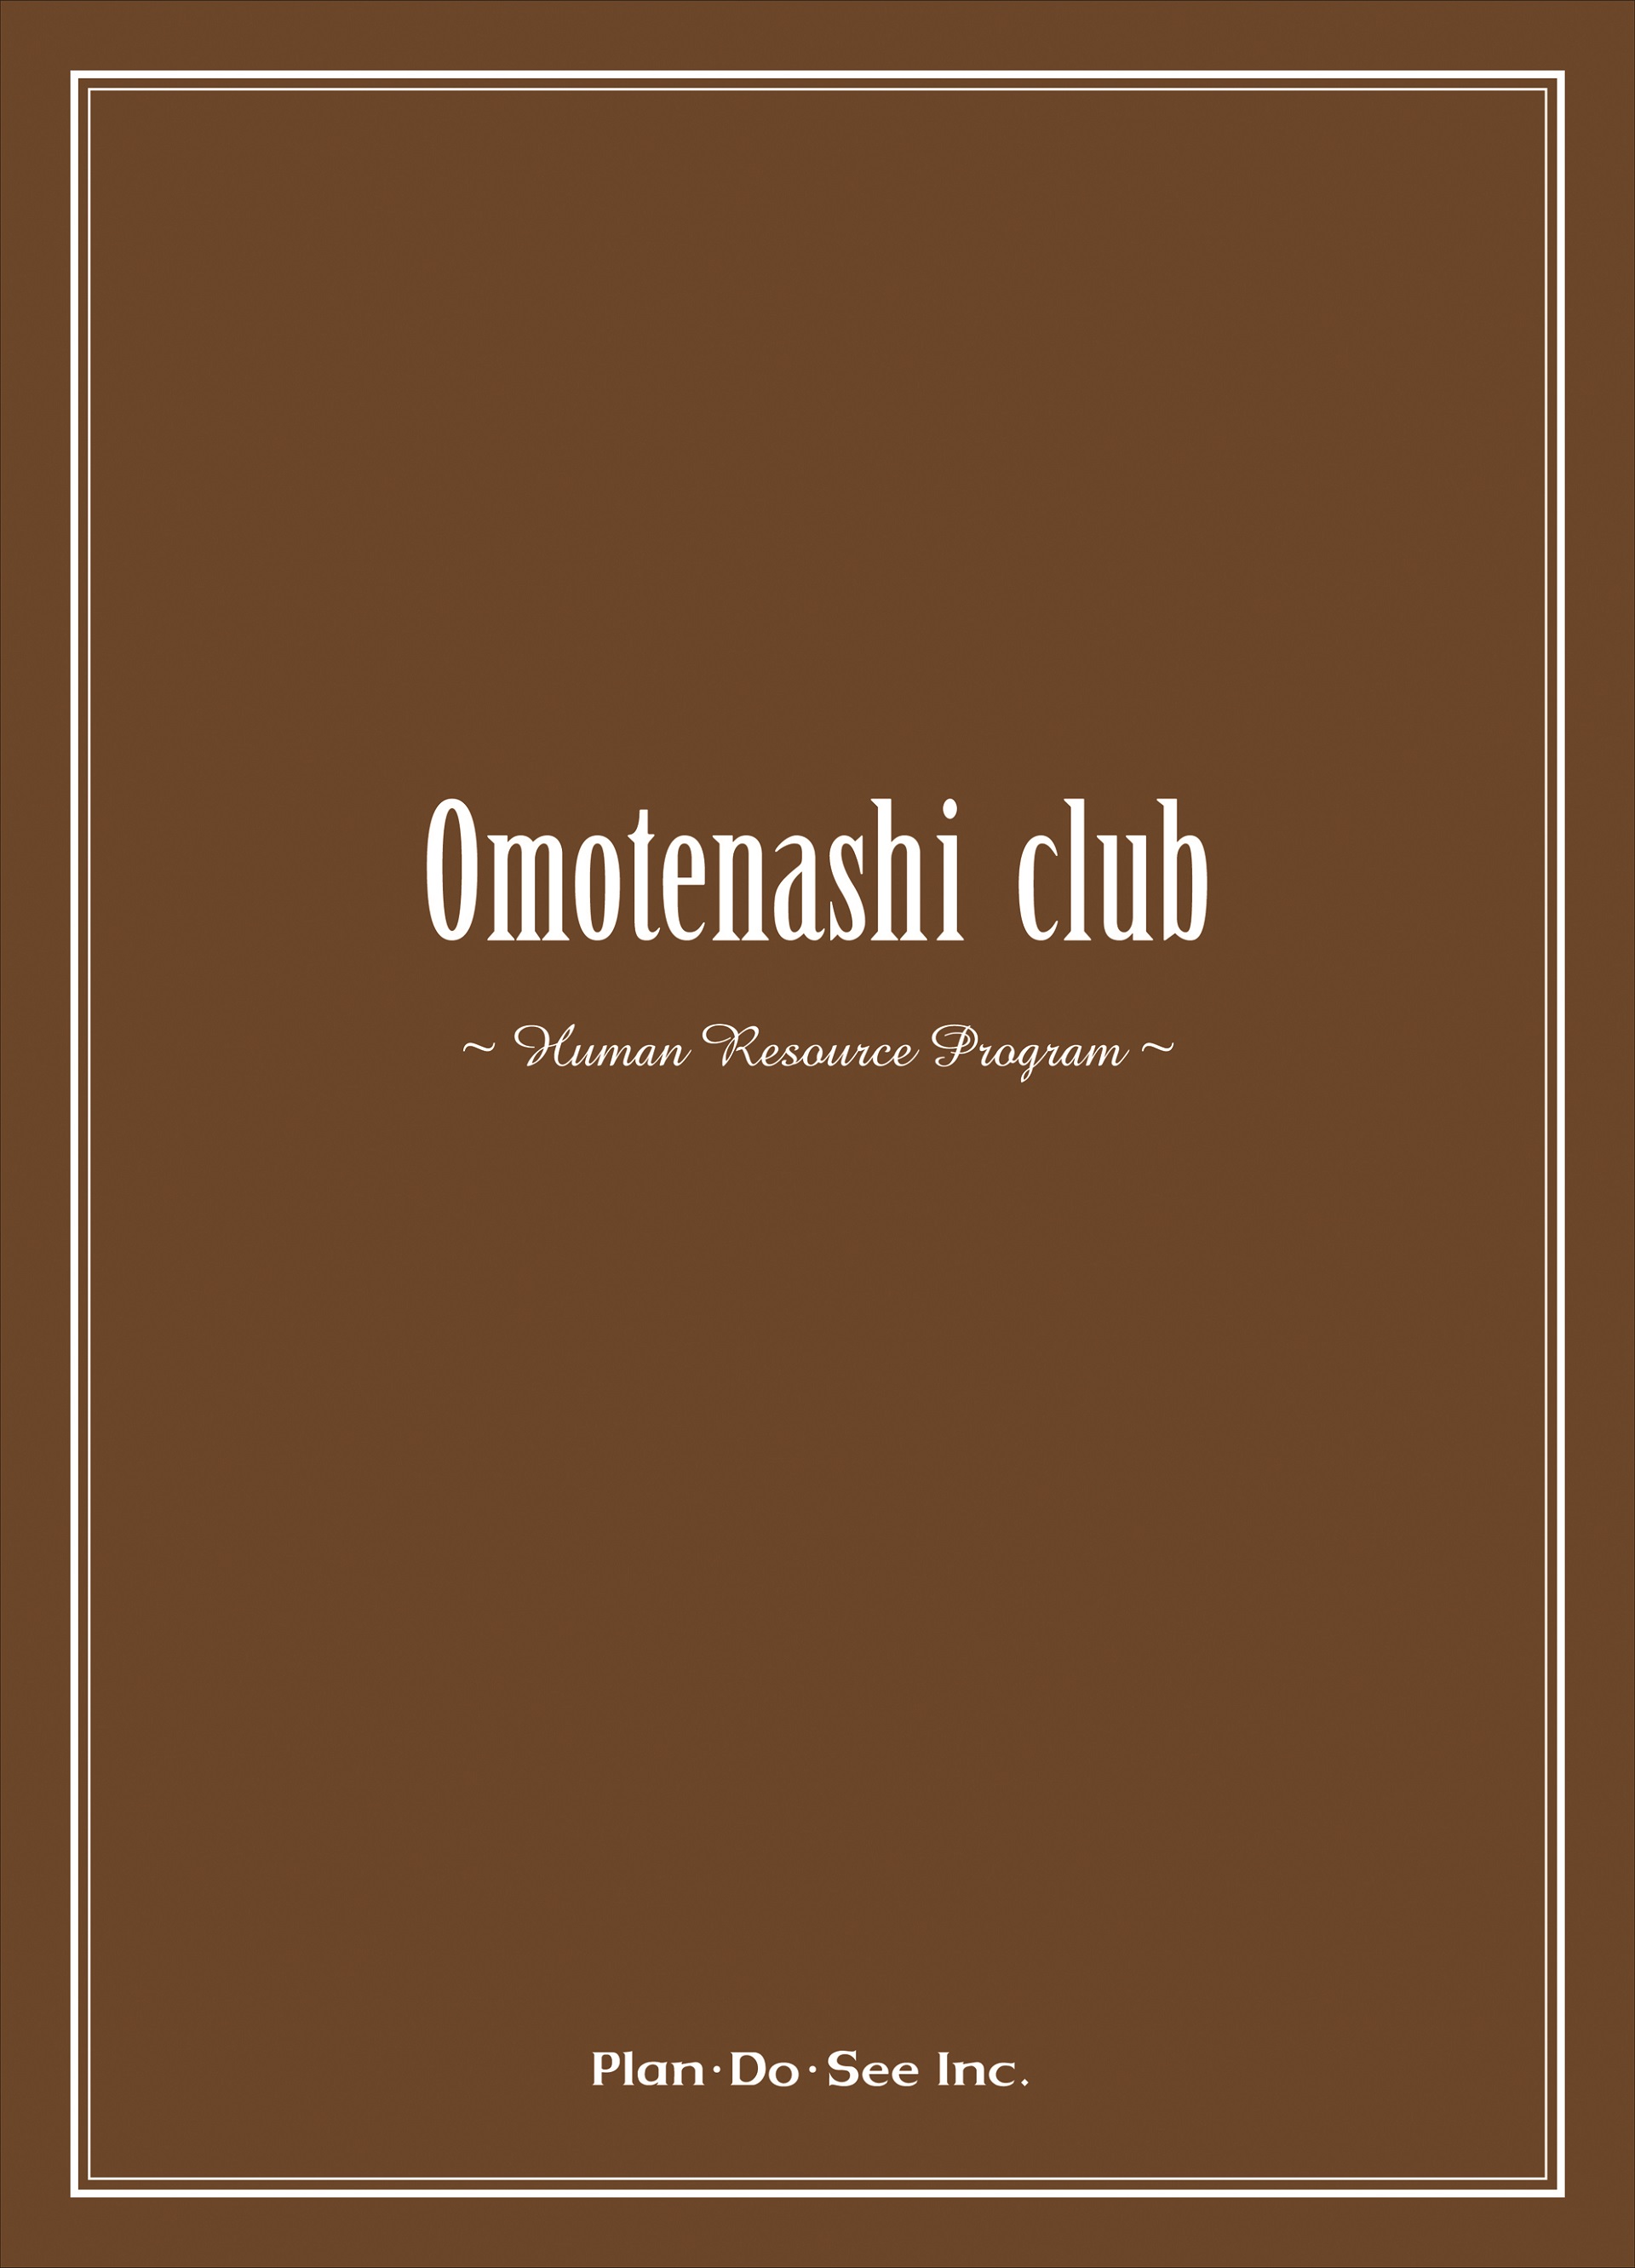 01plan-do-see%e3%80%80omotenashi-club